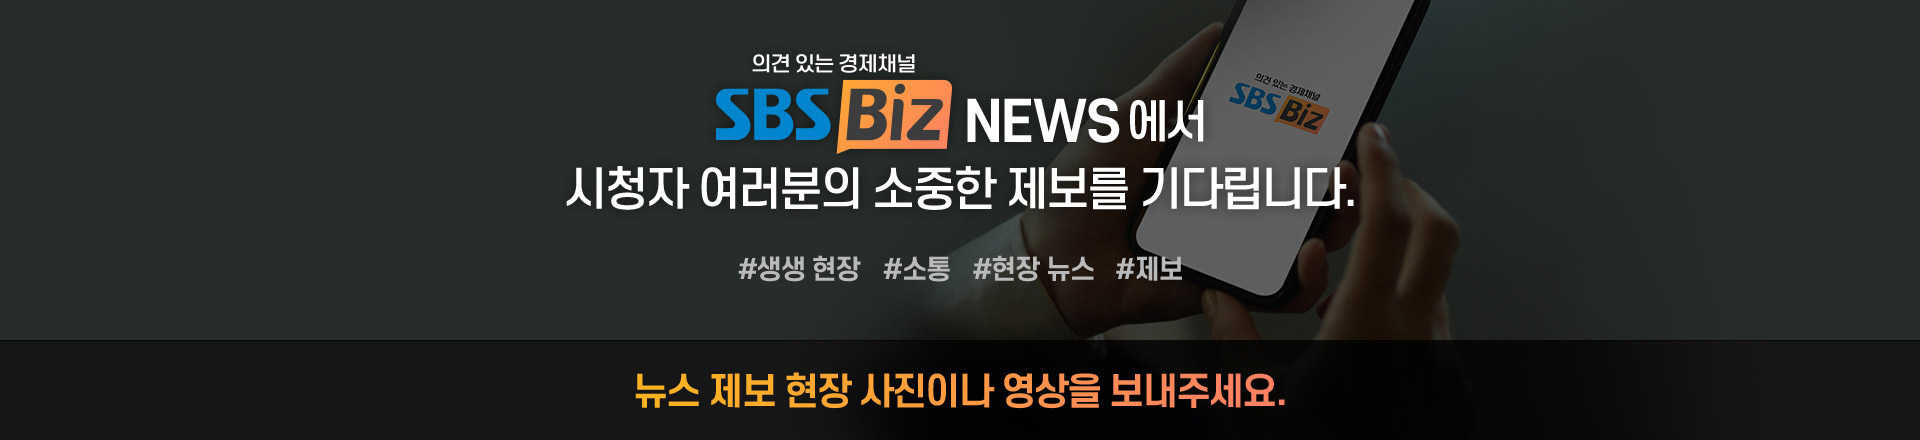 SBS Biz News에서 시청자 여러분의 소중한 제보를 기다립니다.